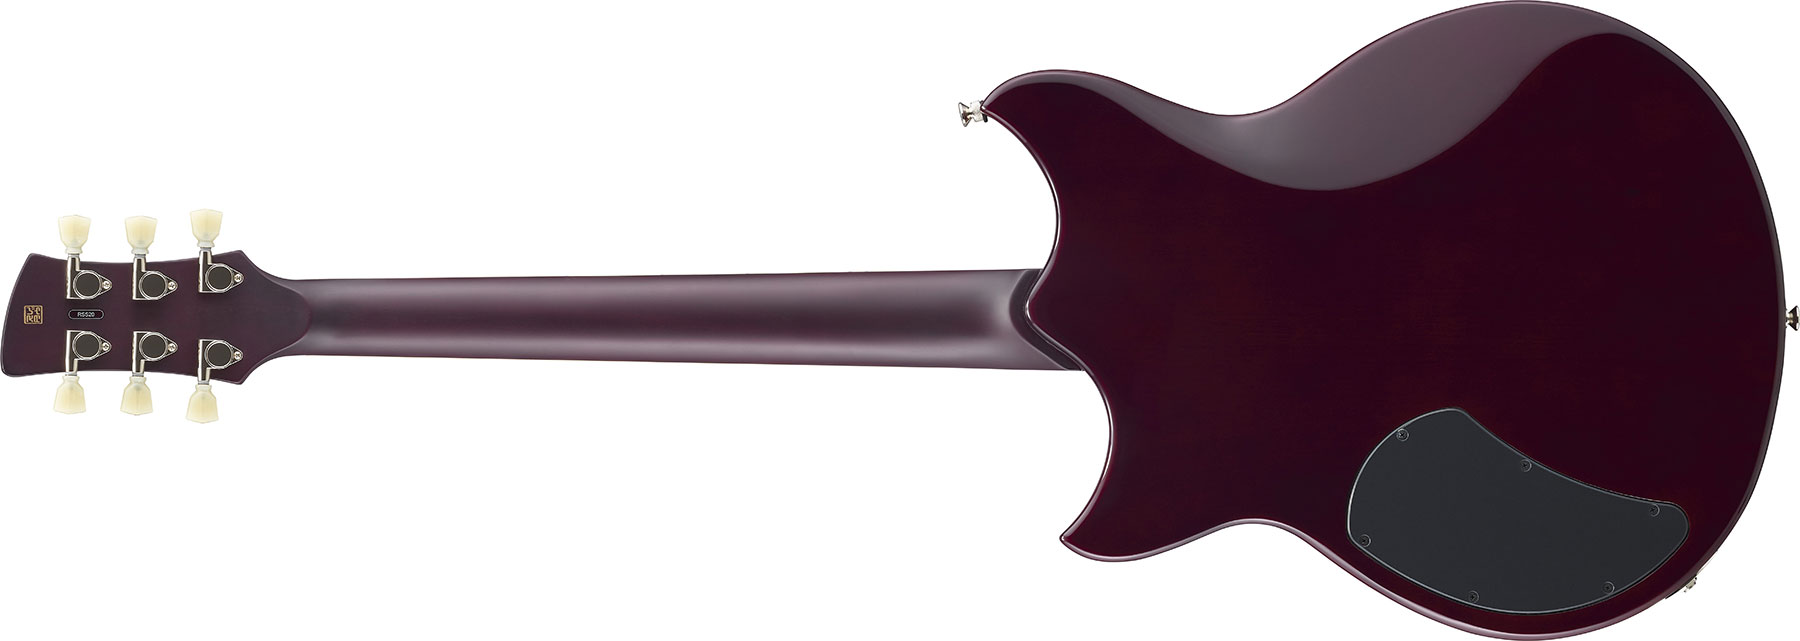 Yamaha Rss20 Revstar Standard Hh Ht Rw - Black - Guitare Électrique Double Cut - Variation 2